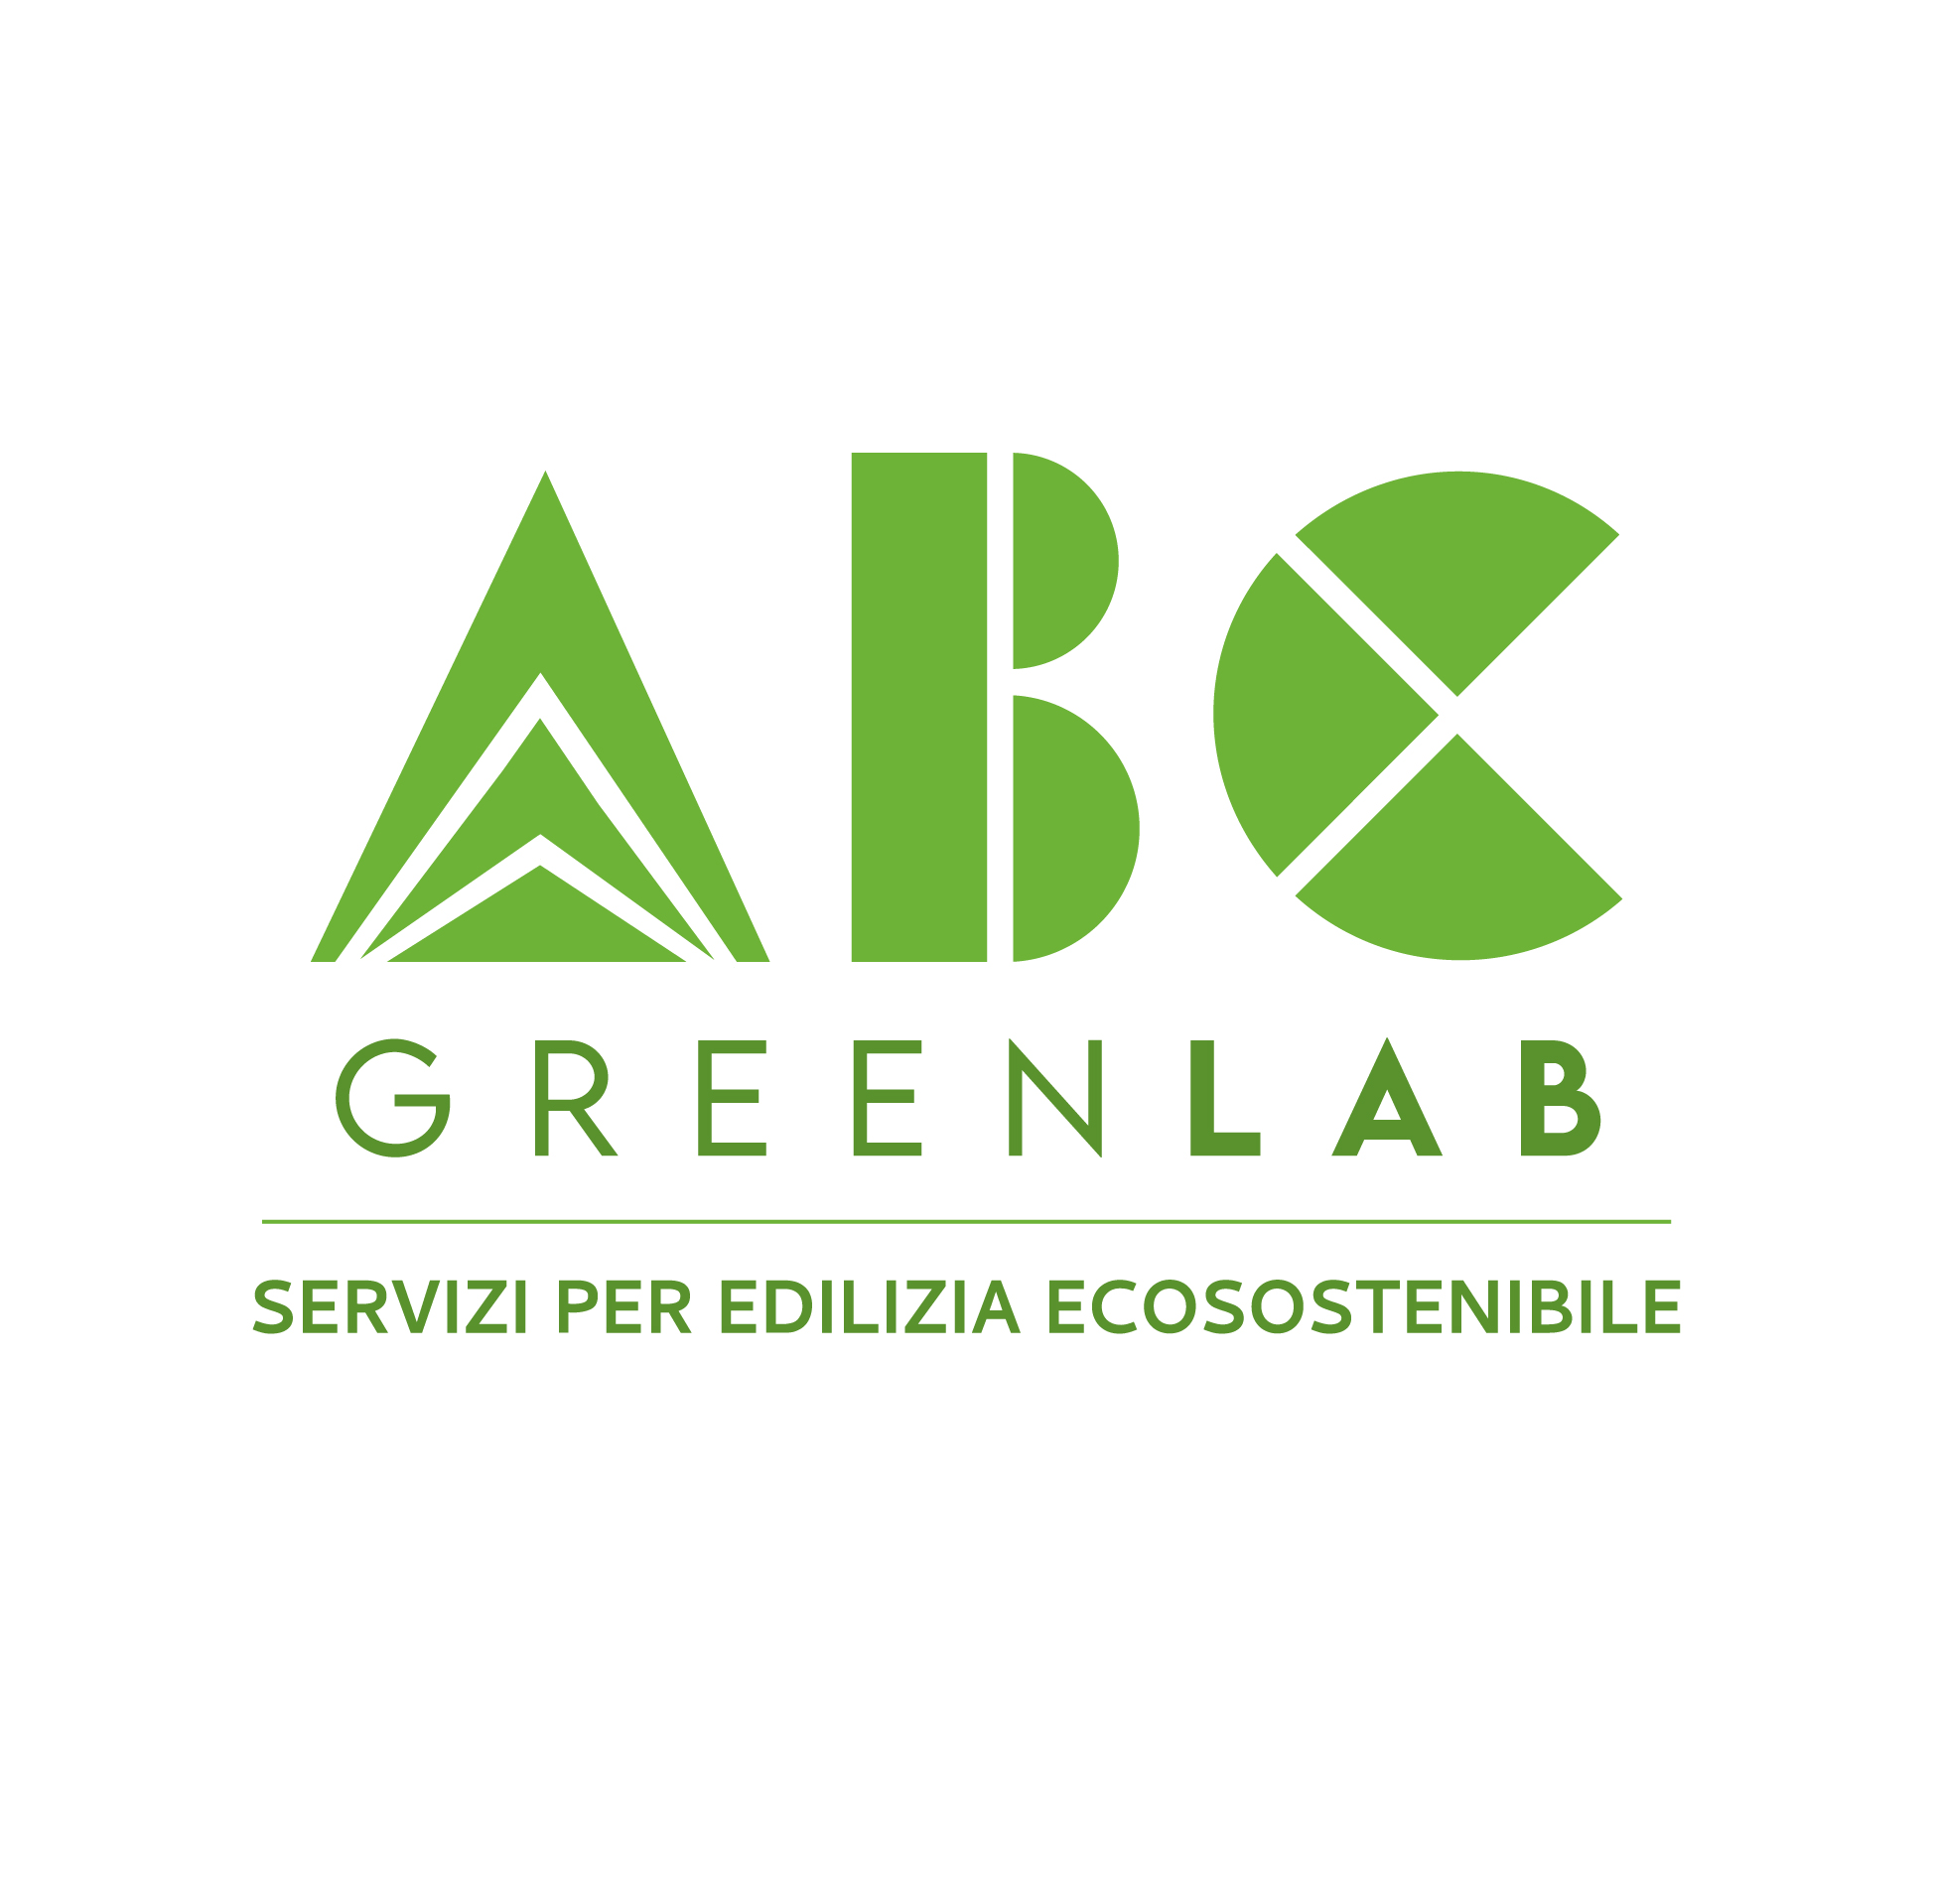 ABC GreenLab